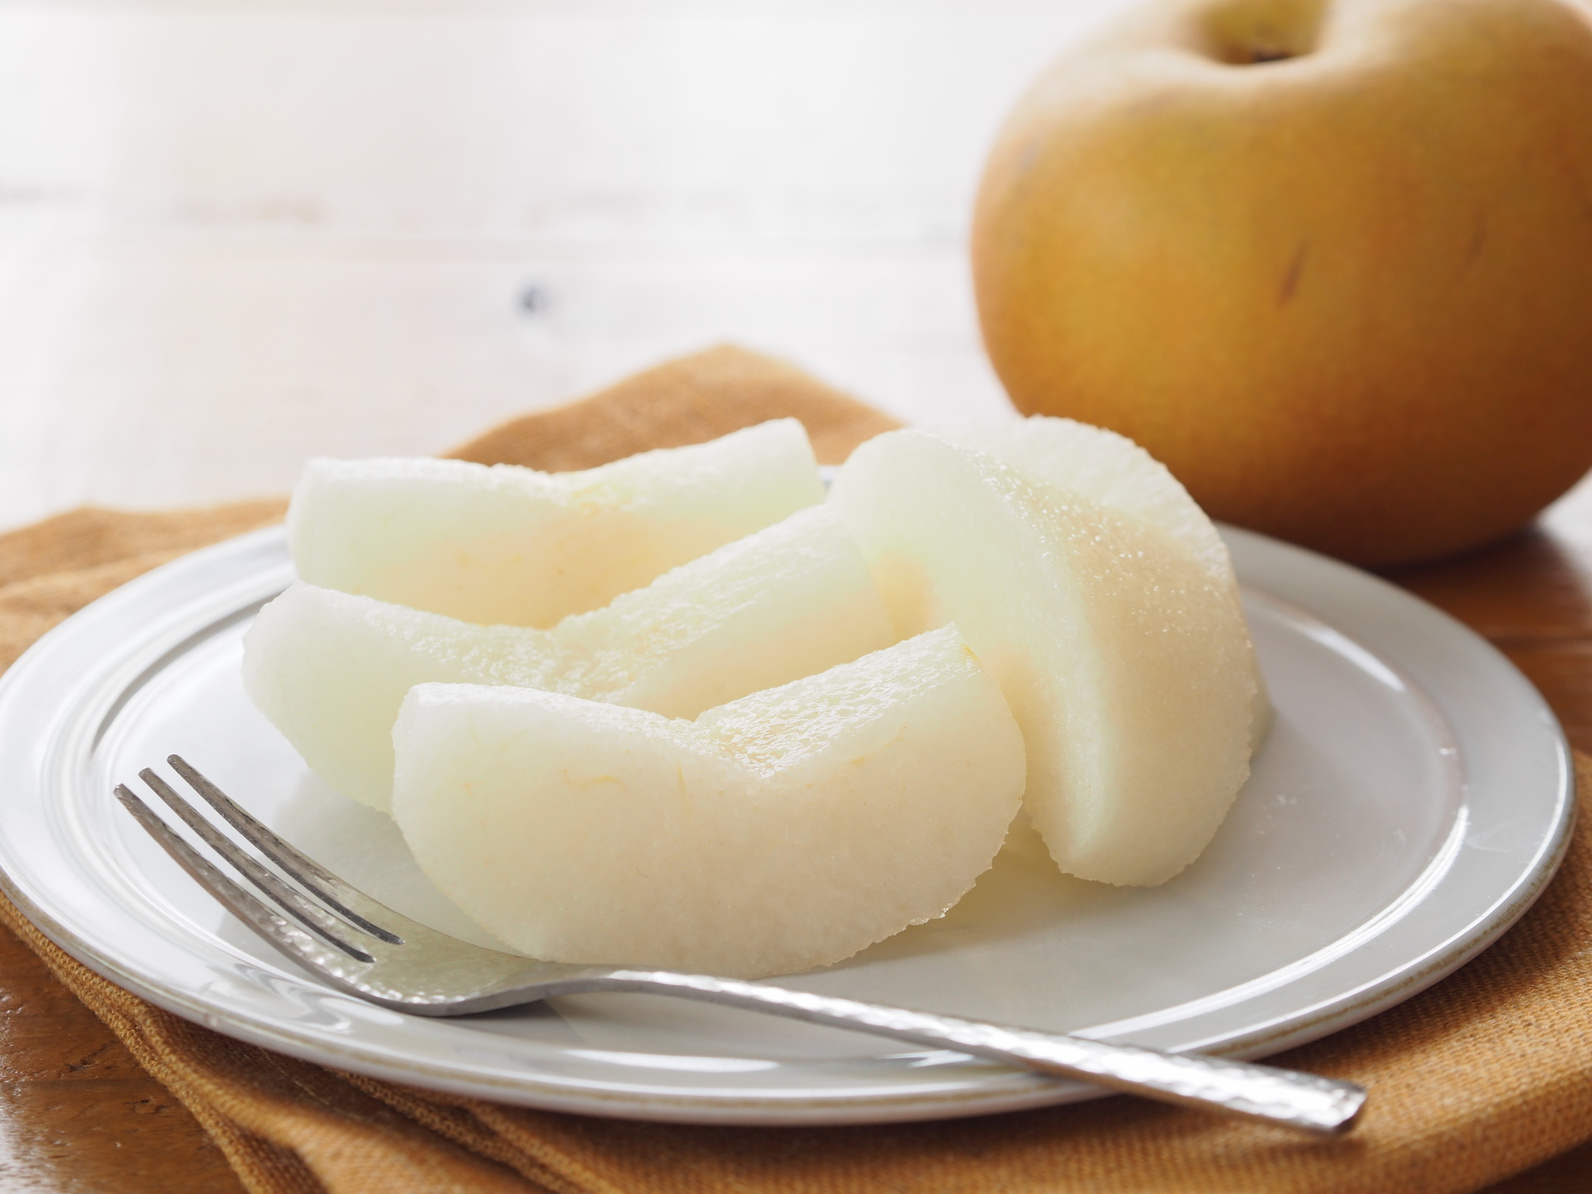 梨の冷凍保存方法と日持ちの期間 アレンジレシピを写真付きで紹介 急速冷凍 による高品質な業務用食材通販マーケット